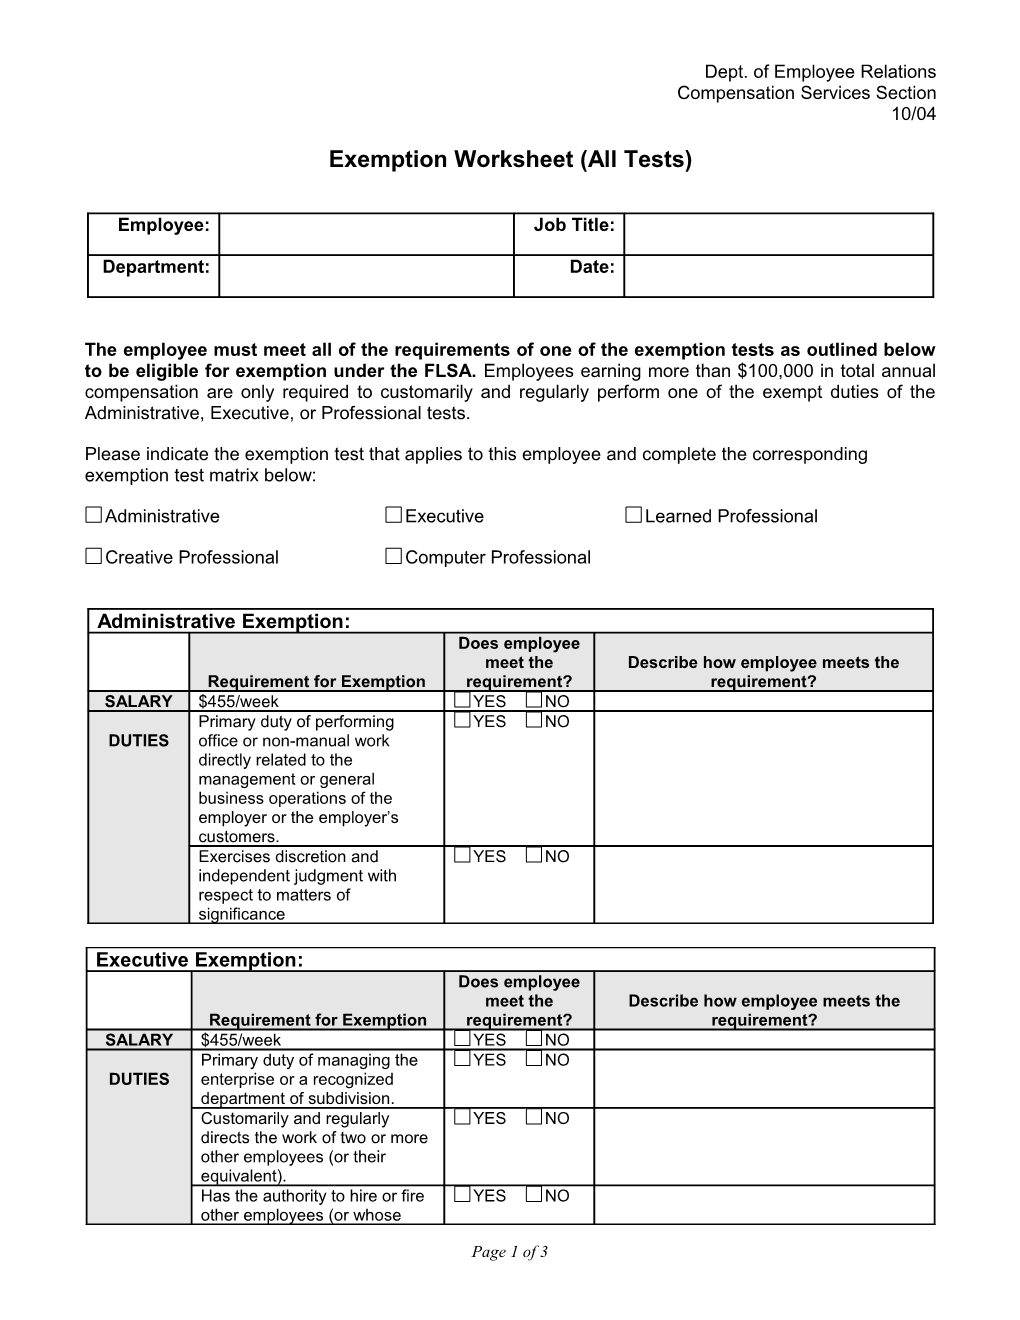 Exemption Worksheet (All Tests)